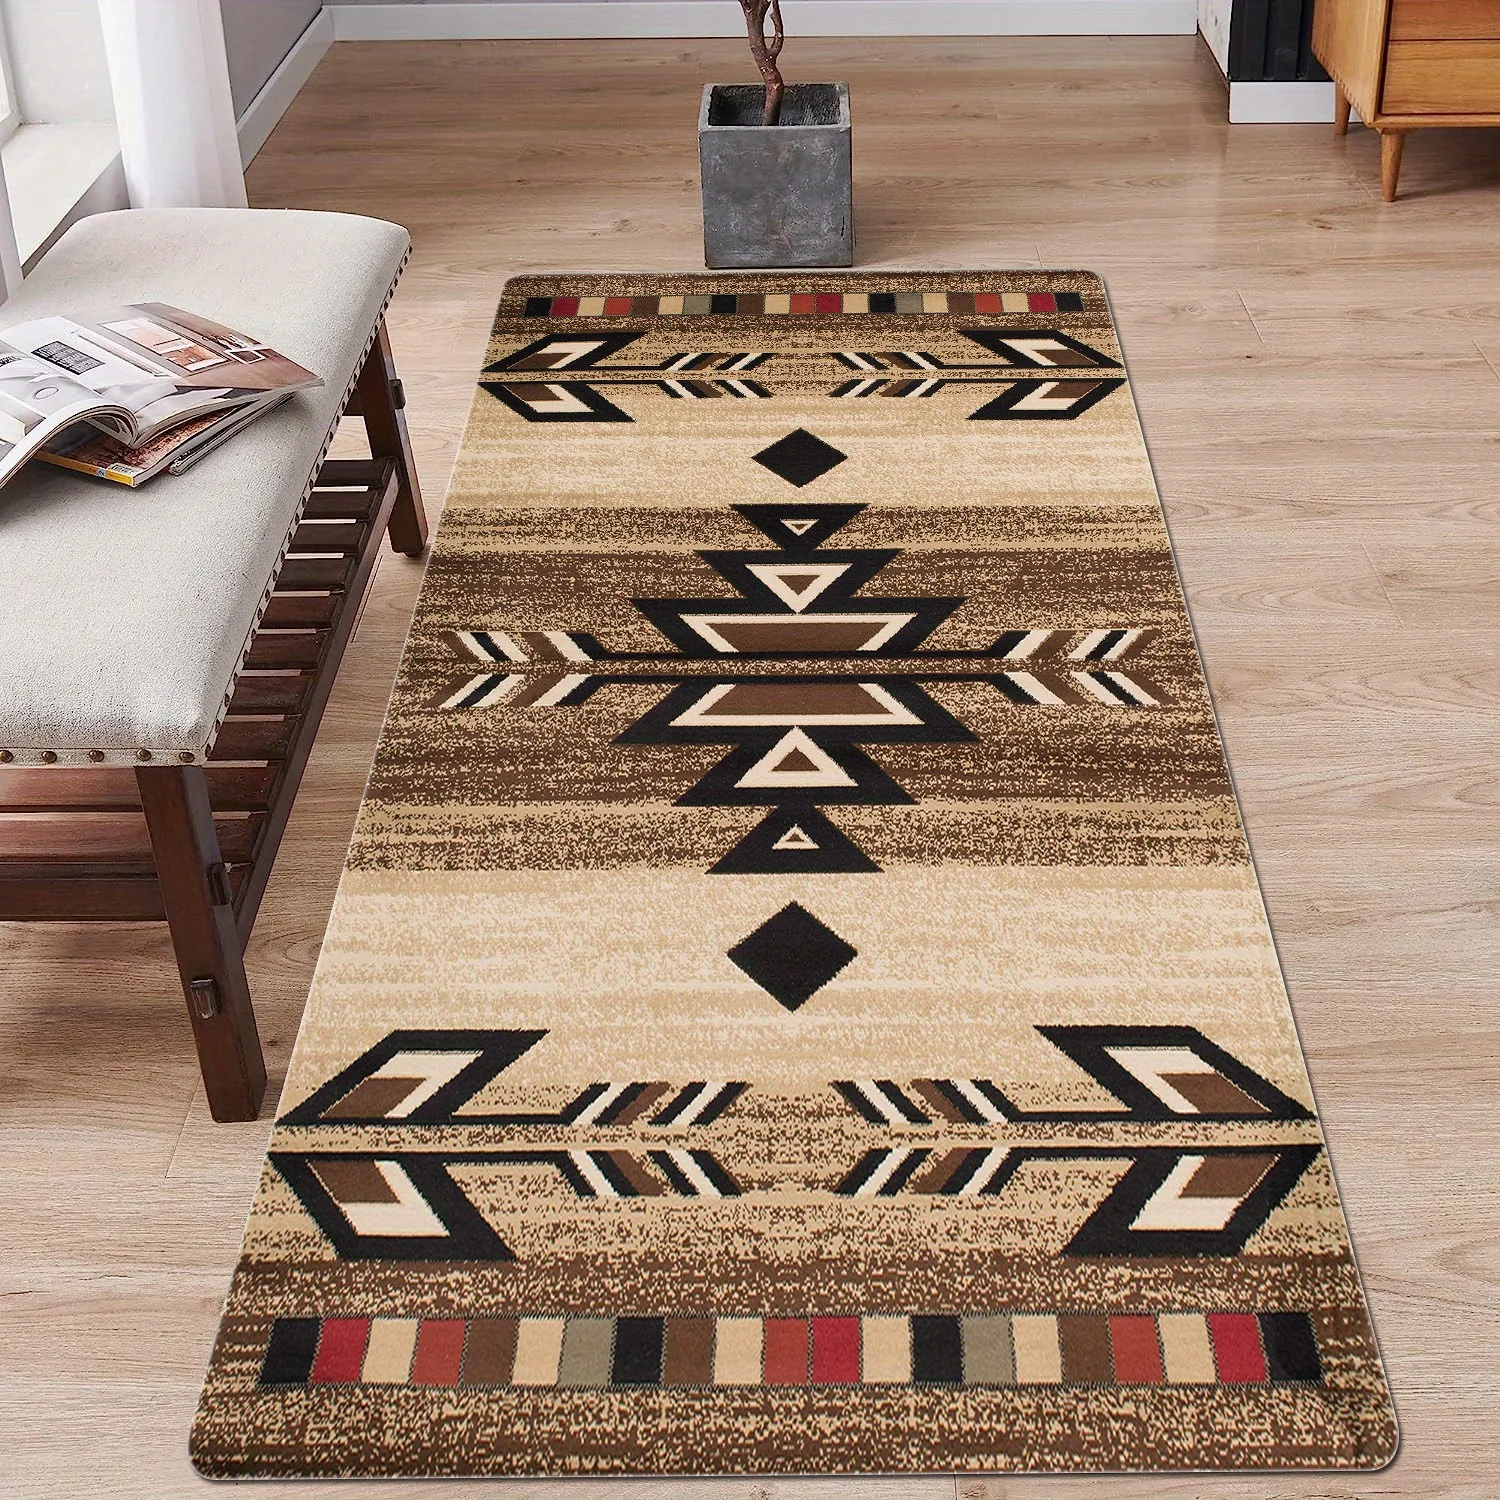 

Modern Bohemian Geometry Print Rectangle Carpet Art Rug for Bedroom Living Room Soft Fluffy Bathroom Rug Nonslip Mat Home Decor